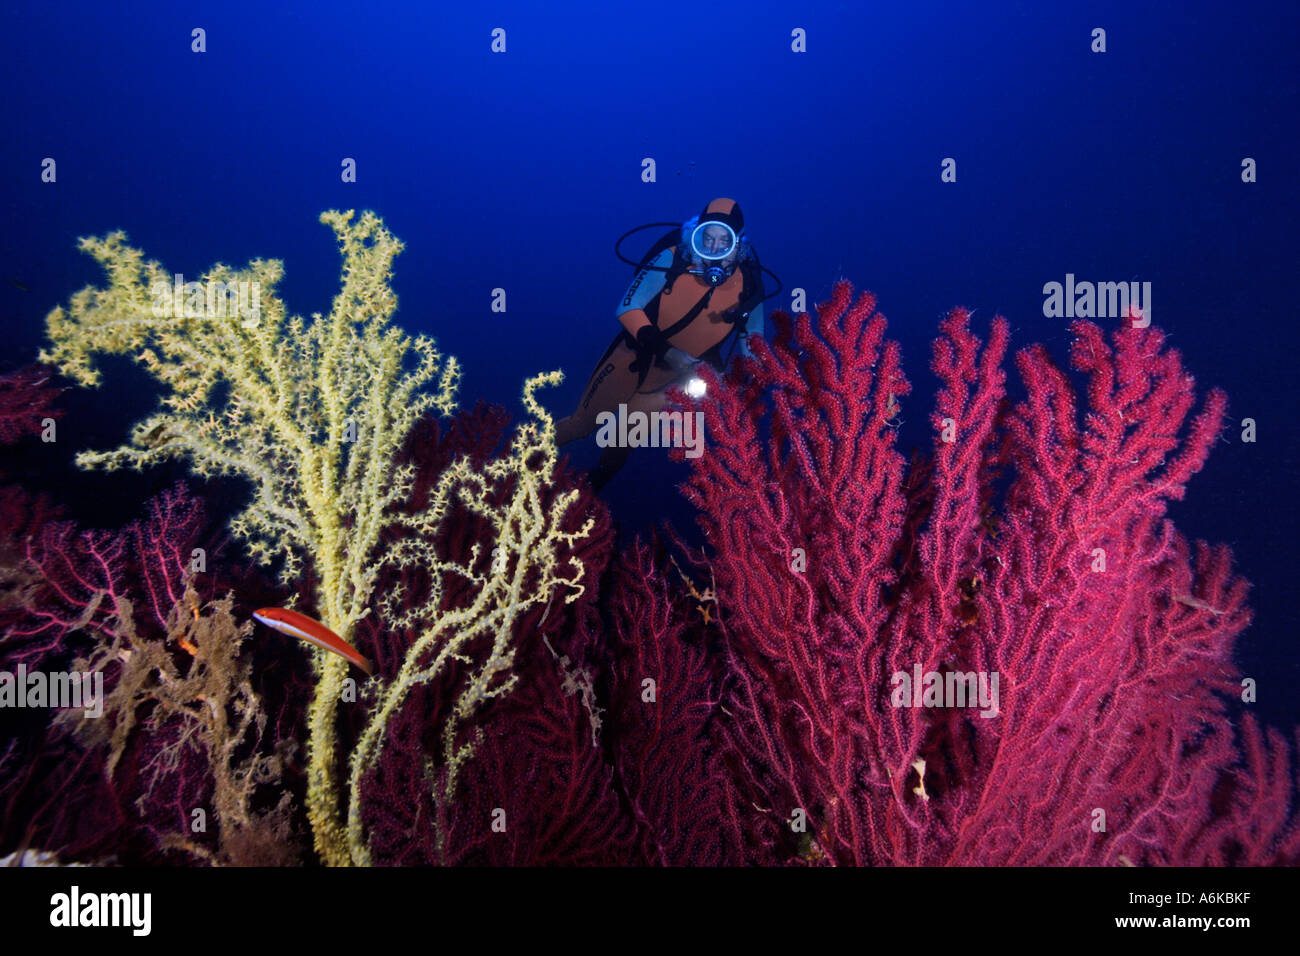 Scuba Diver avec gorgones colorées dans l'eau d'un bleu profond, Paramuricea clavata et Gerardia savaglia Banque D'Images